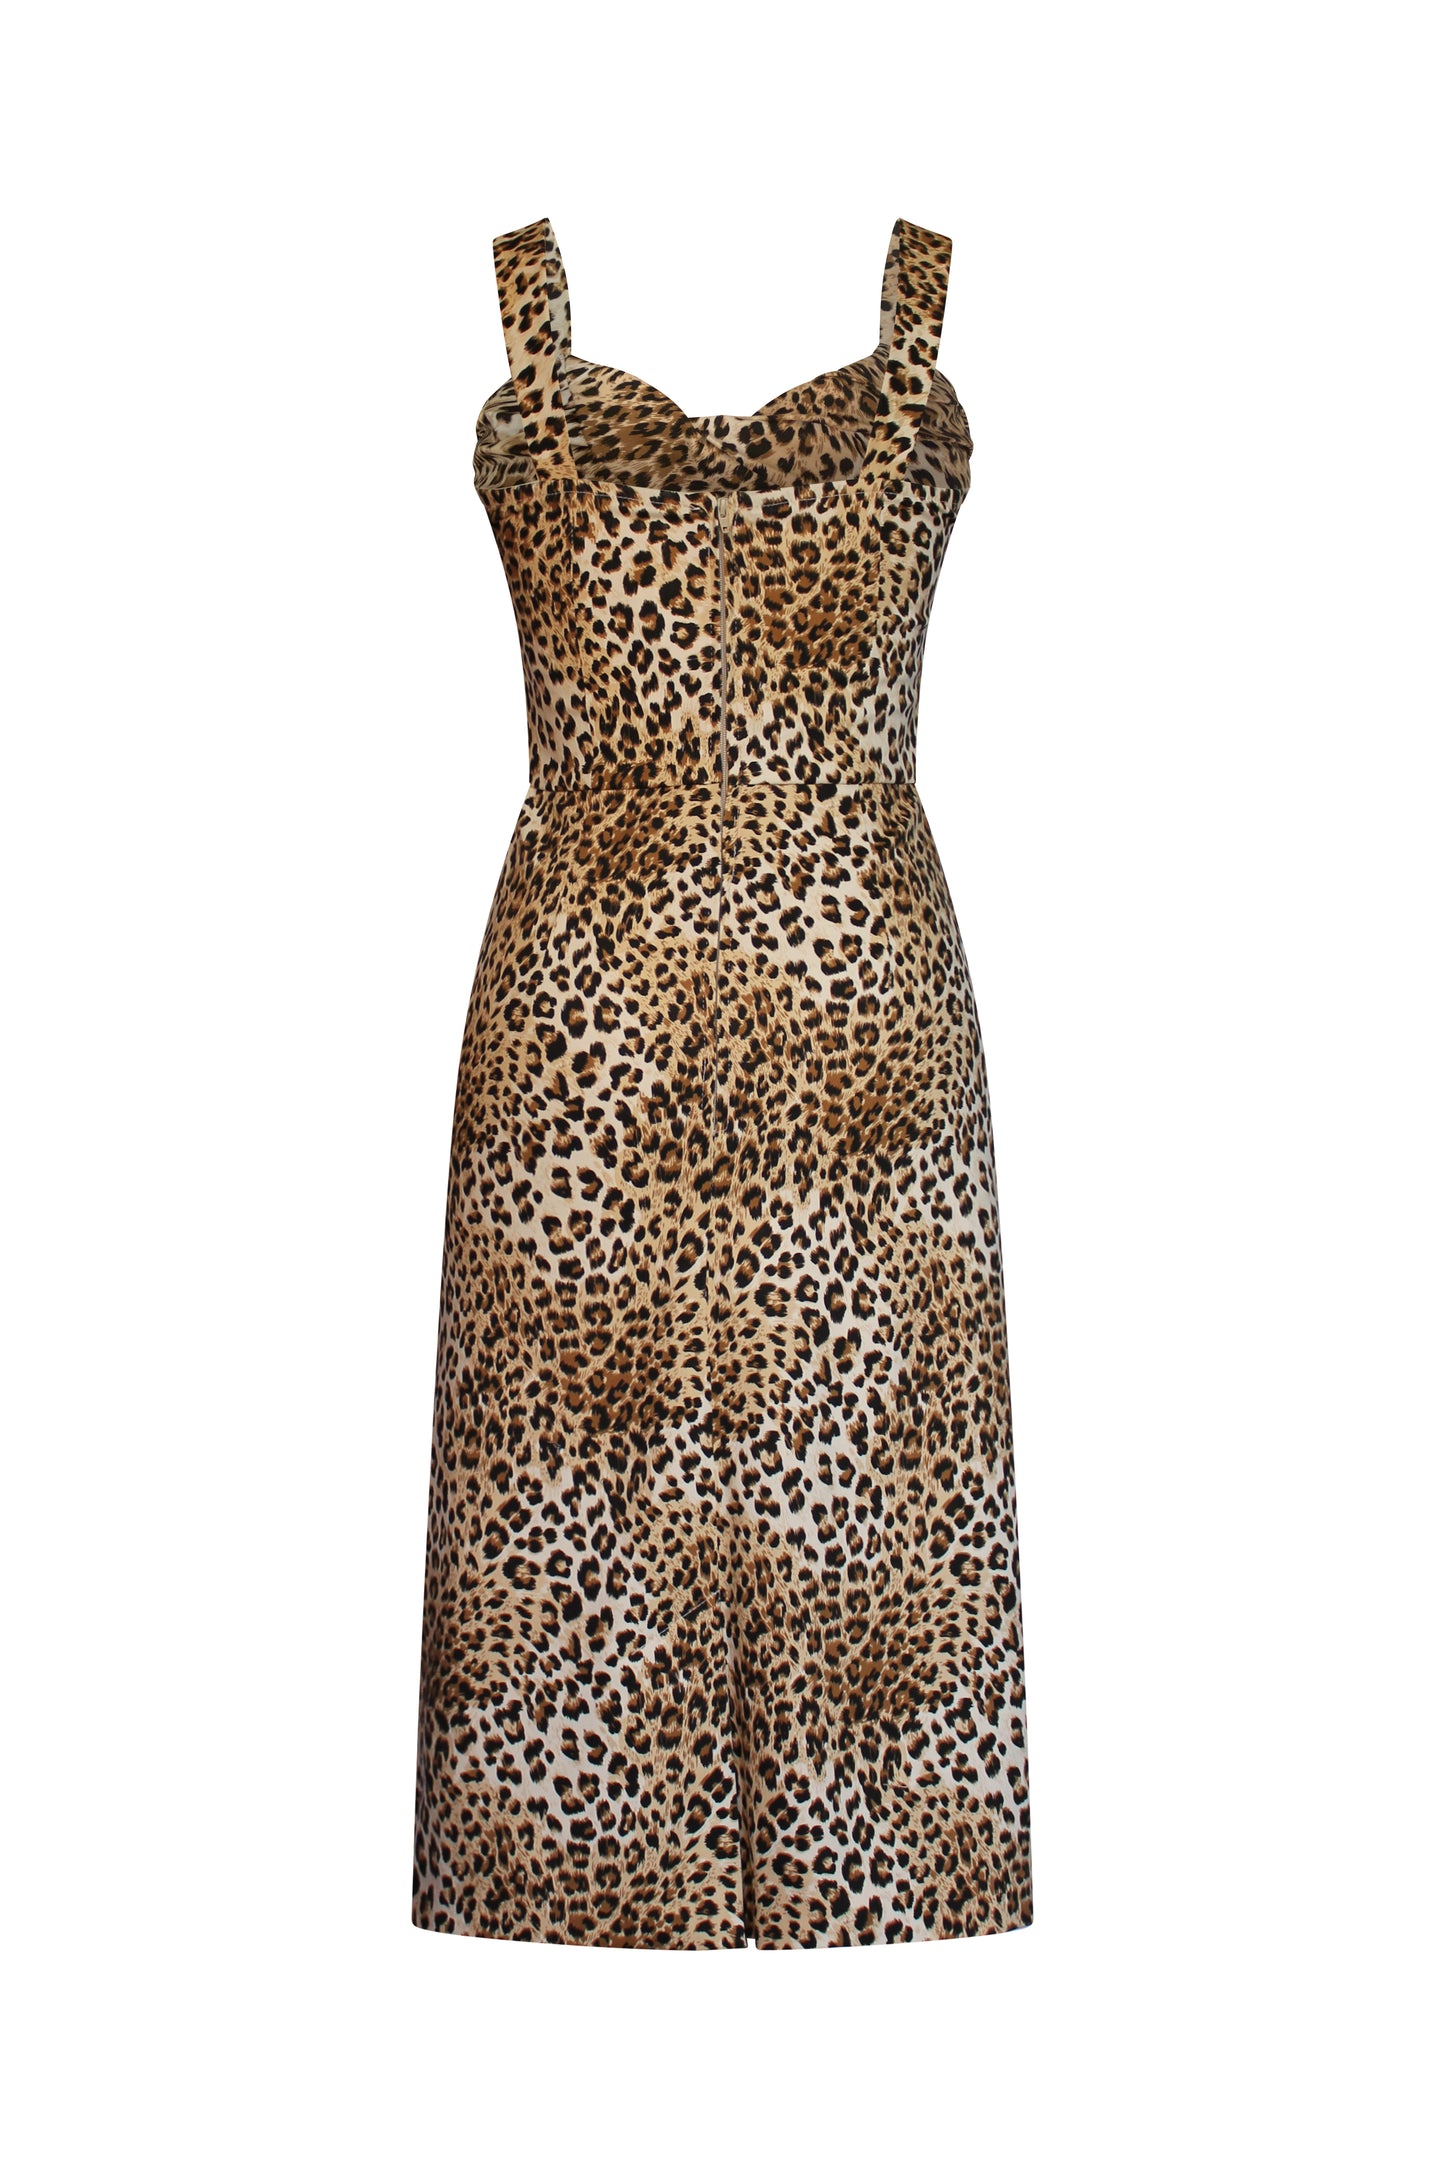 Leopard Dress by Just Add Heels